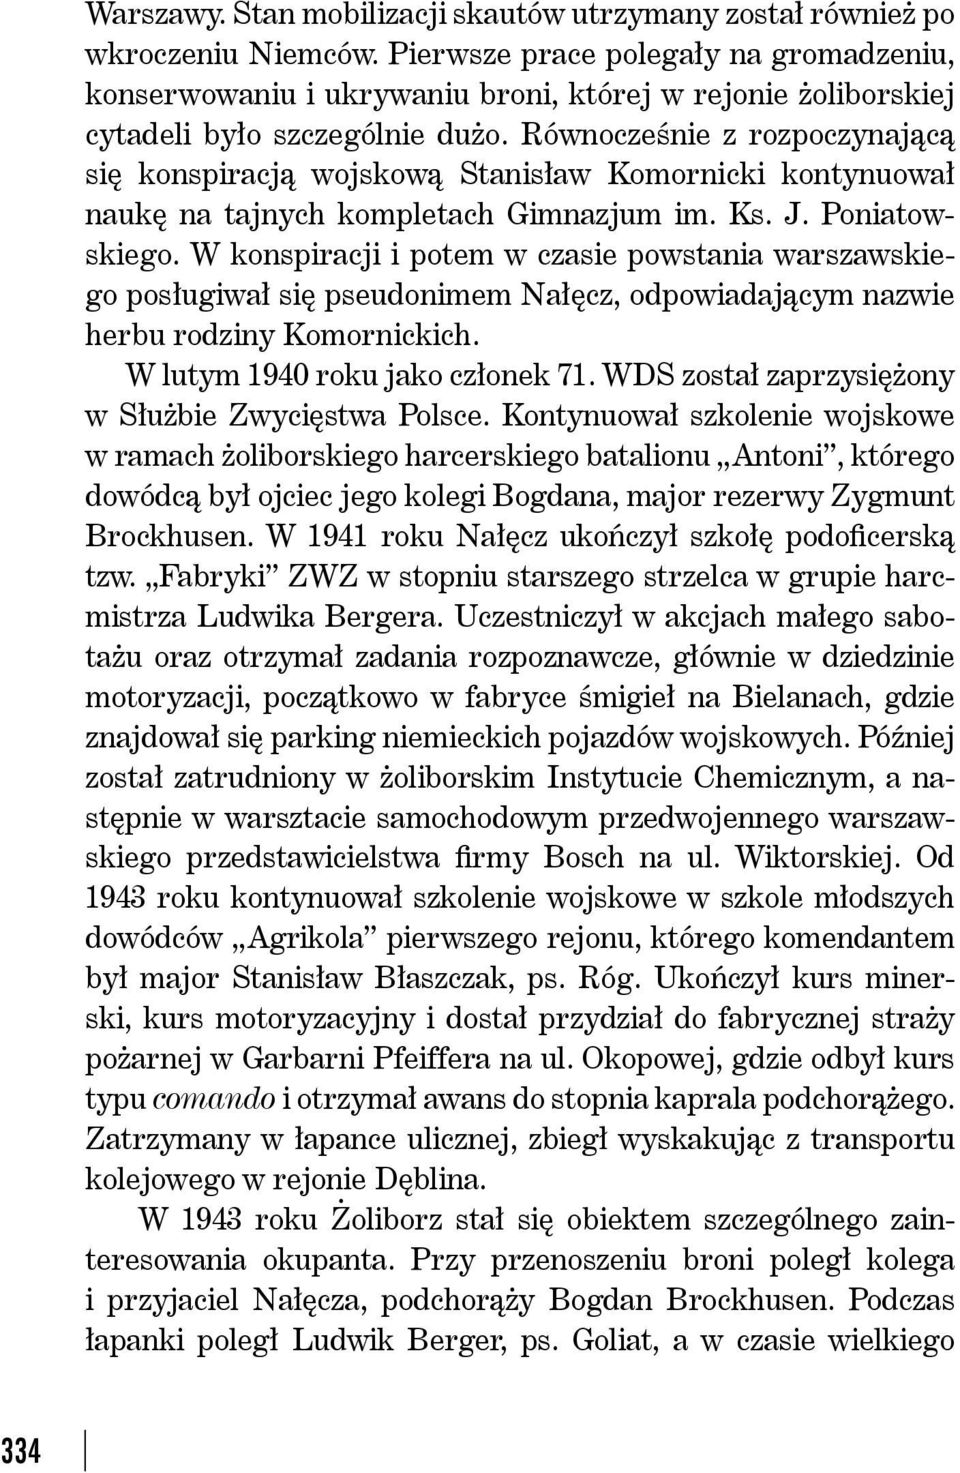 Równocześnie z rozpoczynającą się konspiracją wojskową Stanisław Komornicki kontynuował naukę na tajnych kompletach Gimnazjum im. Ks. J. Poniatowskiego.